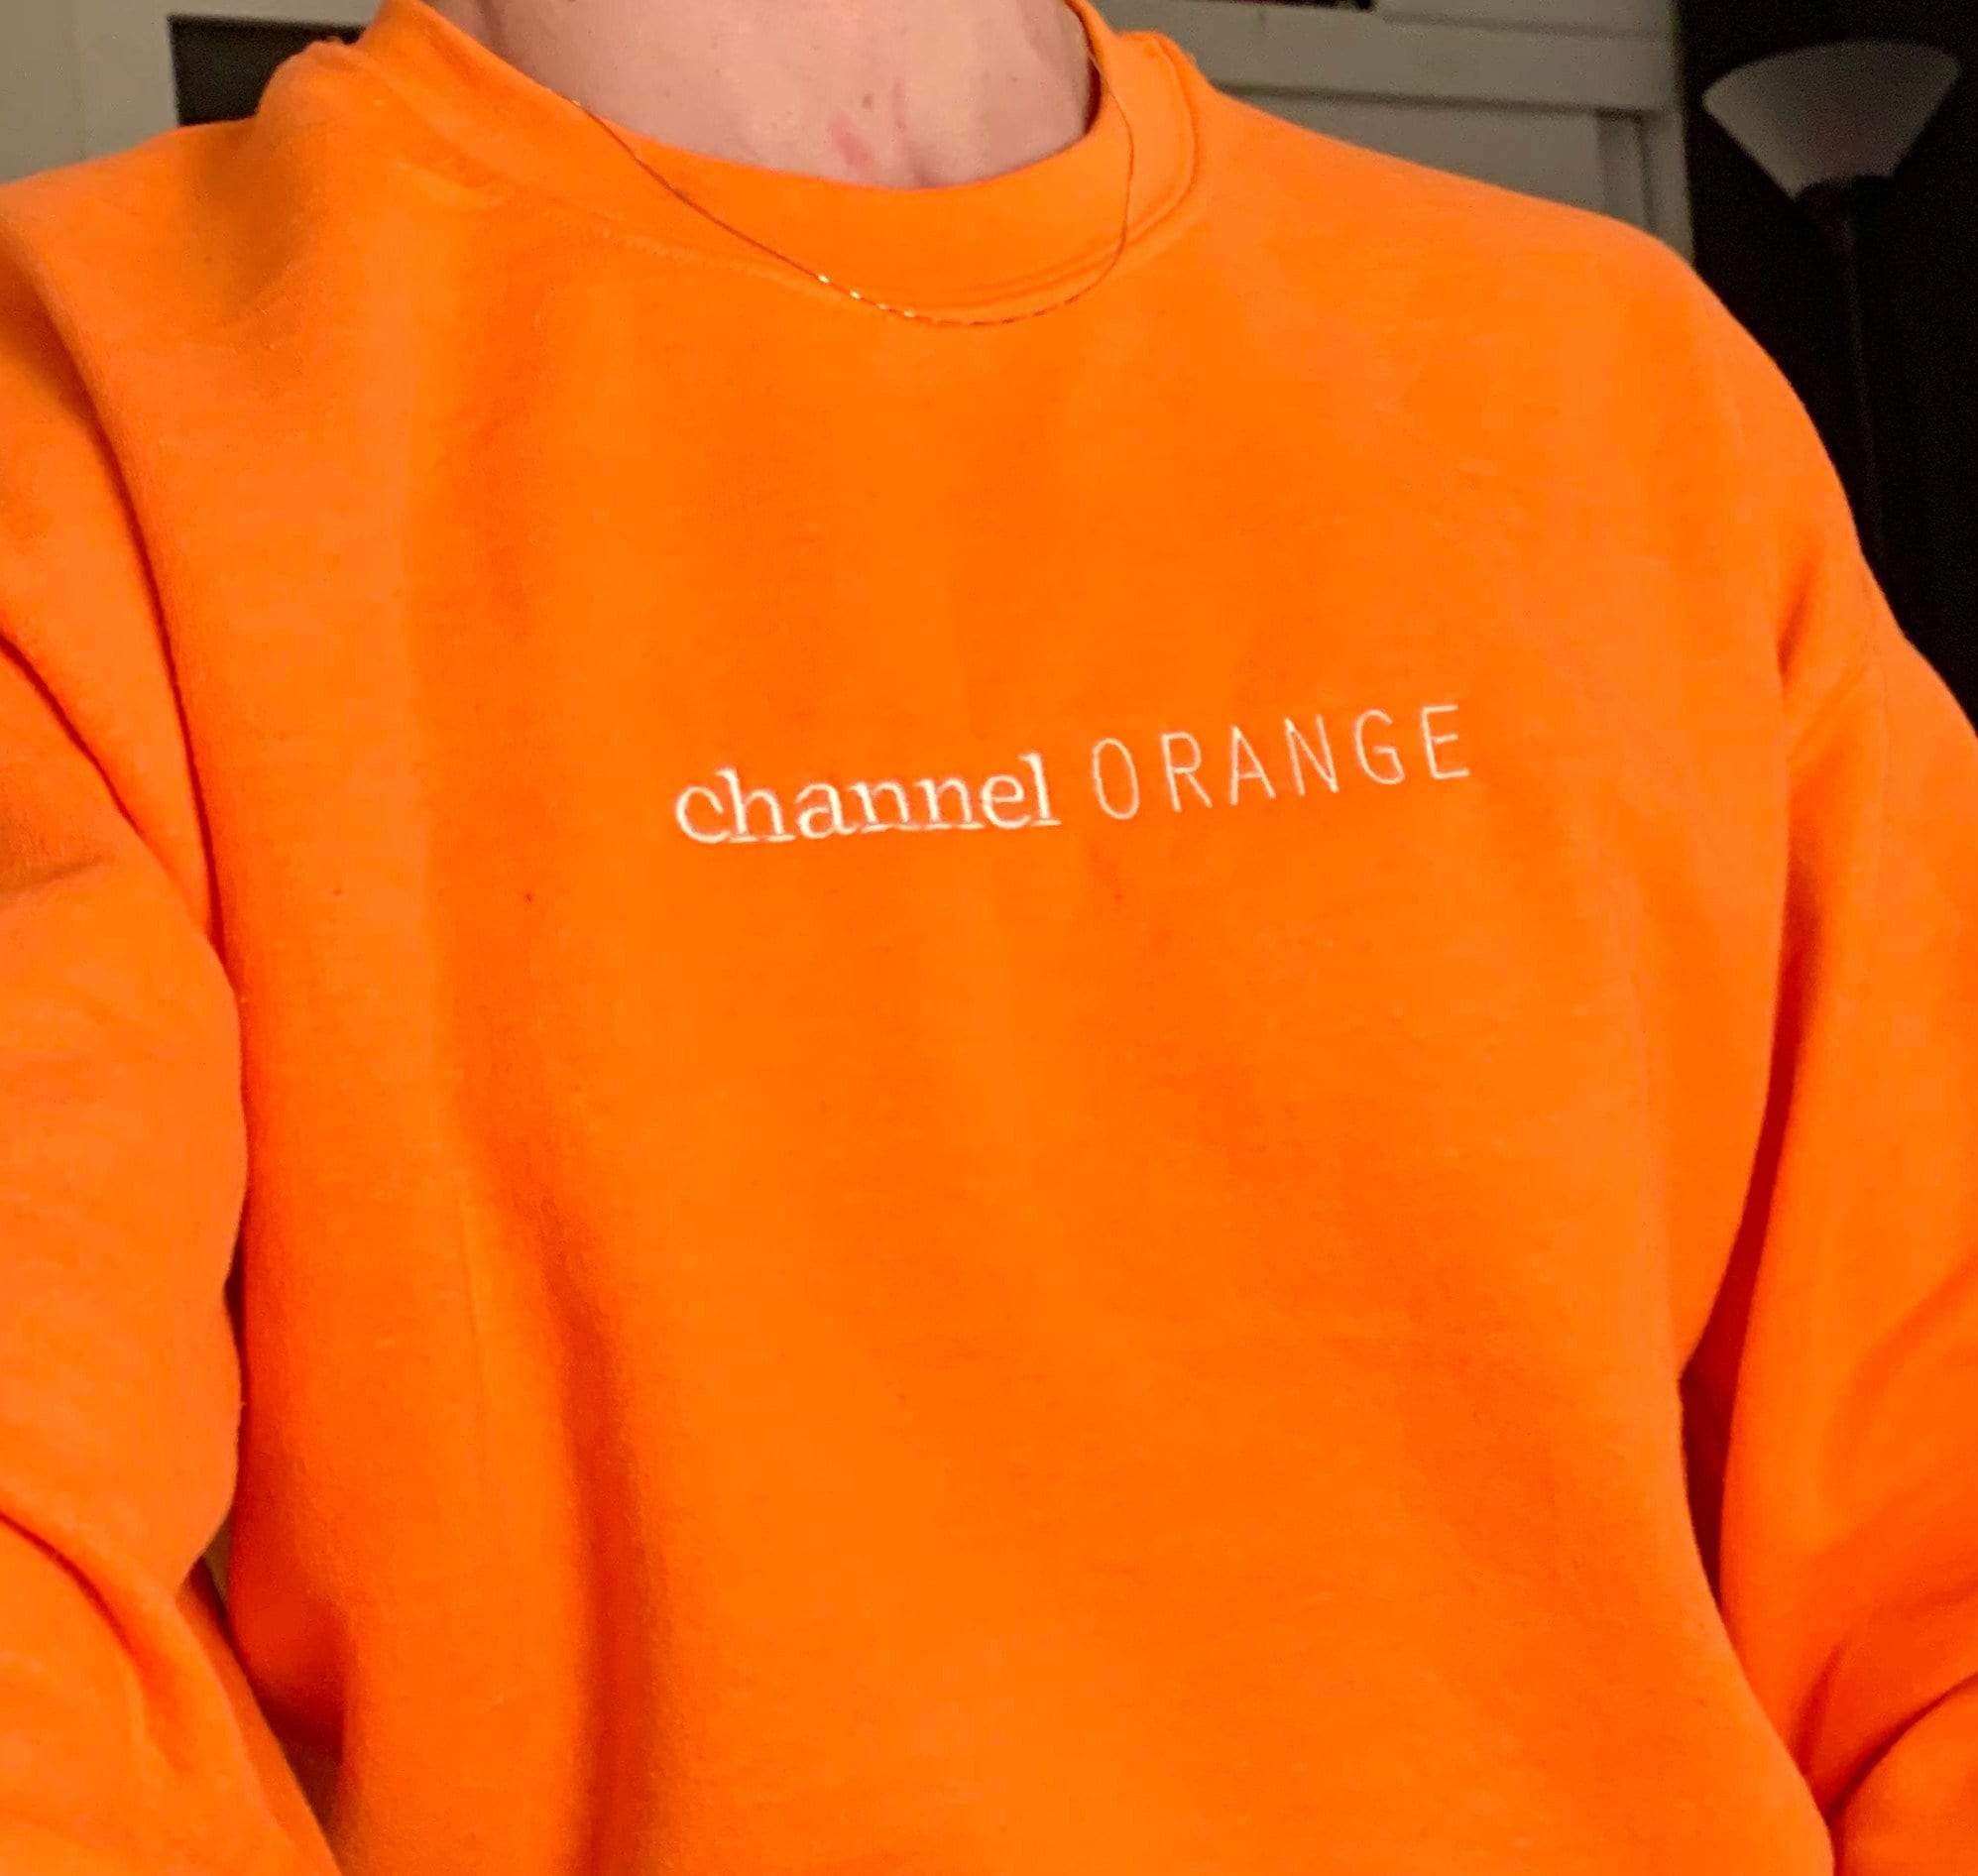 Channel Orange Hoodie, Frank Ocean Trendy Tee Tops Crewneck